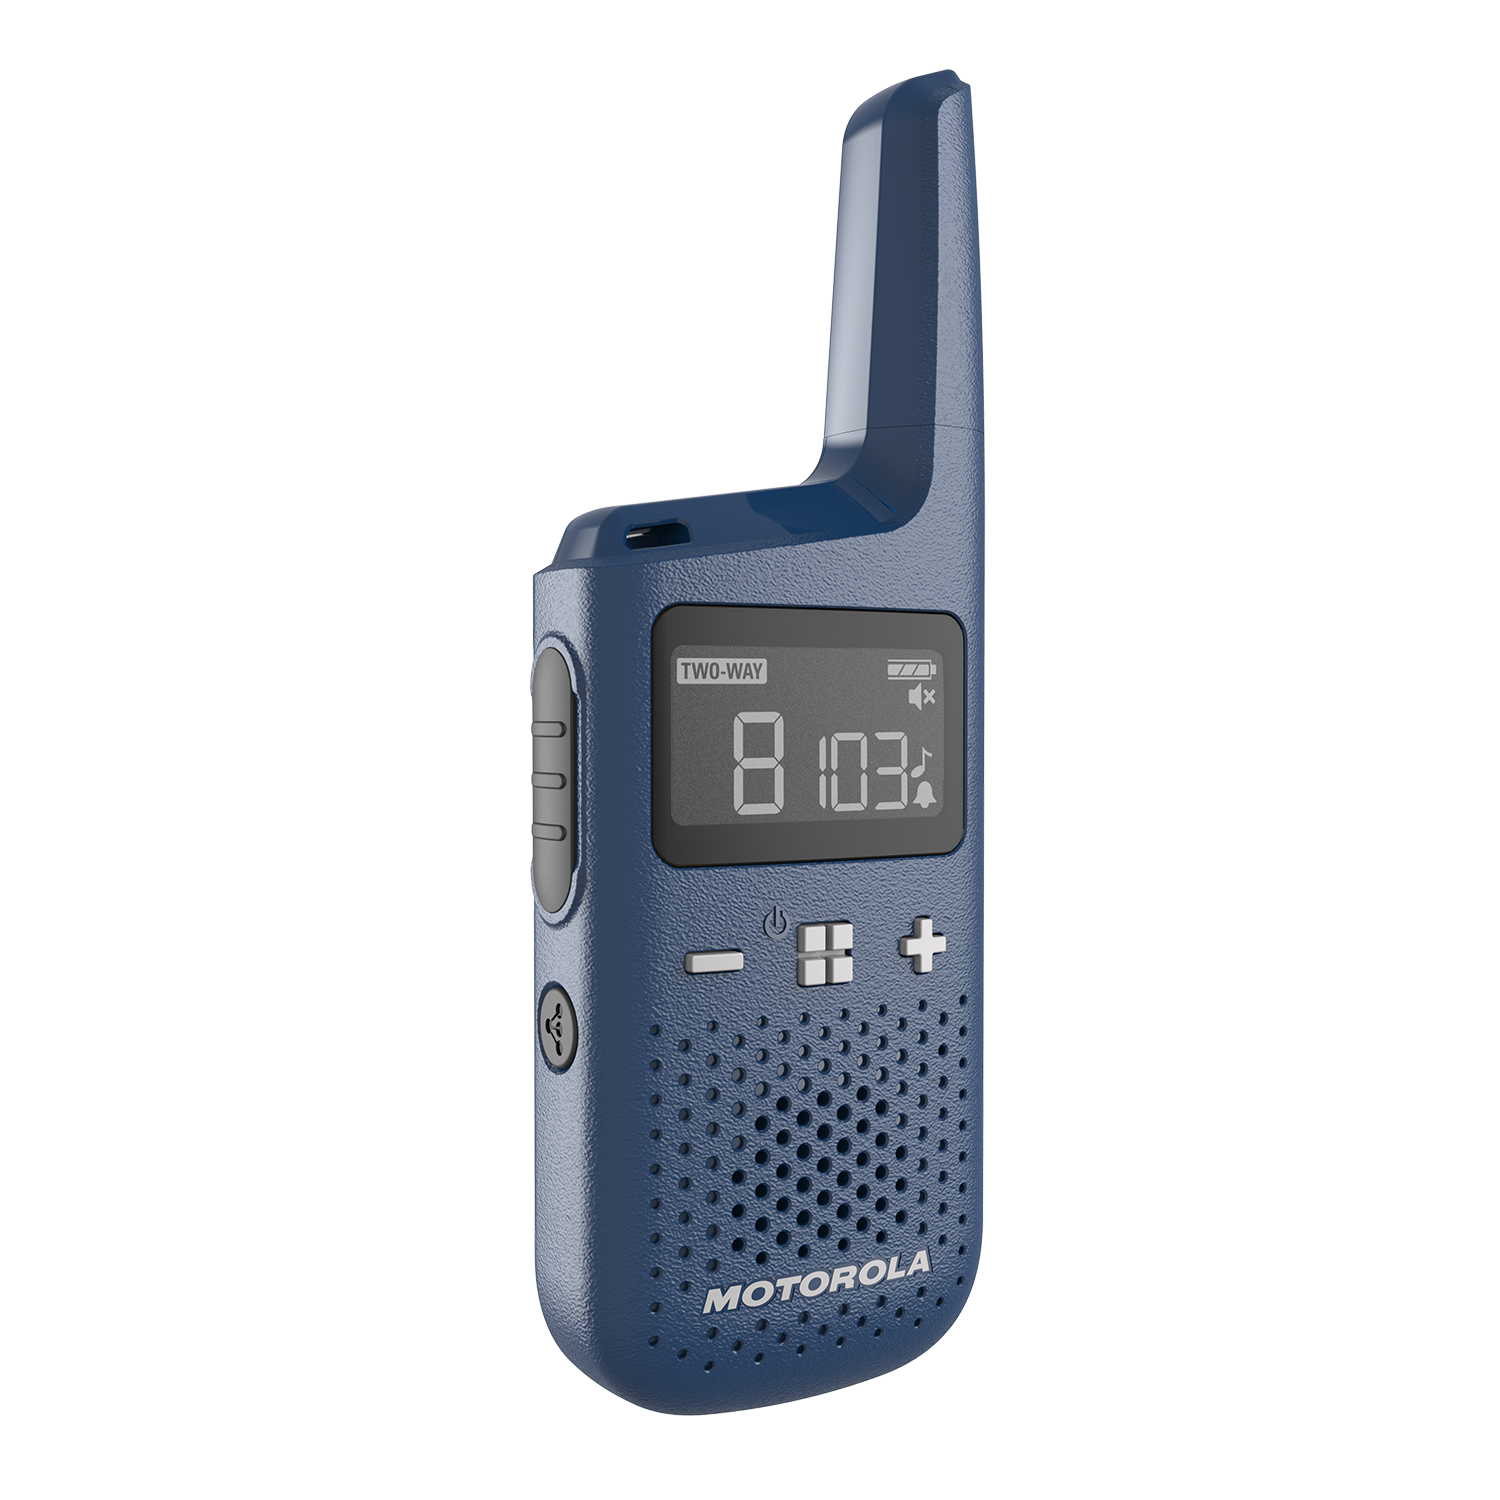 t383 (blue) walkie talkie side buttons